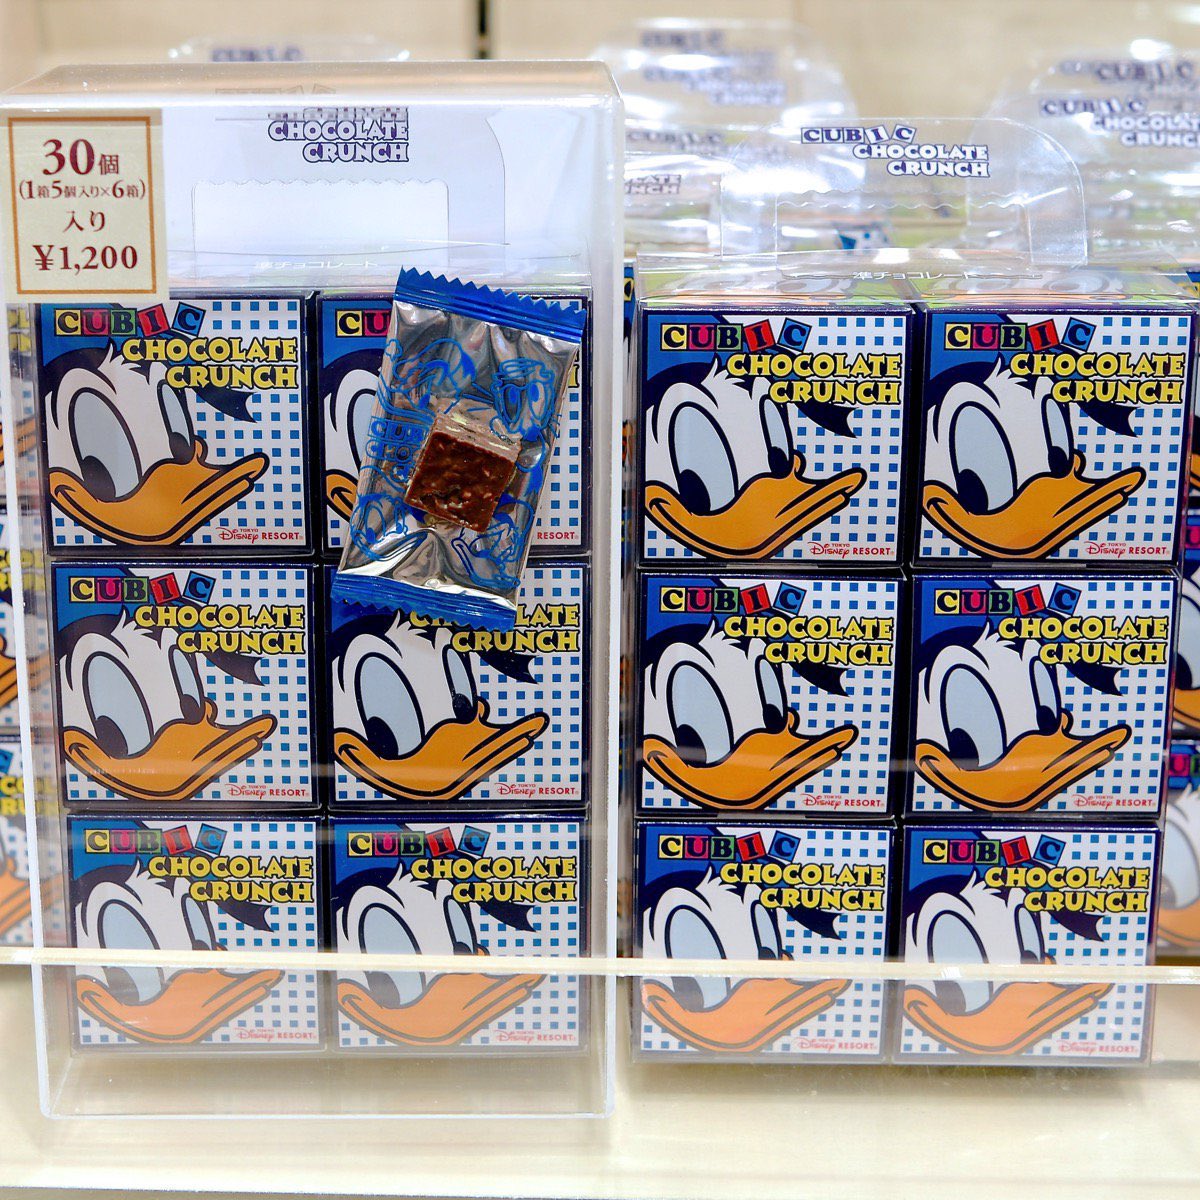 Mezzomikiのディズニーブログ 在 Twitter 上 東京ディズニーリゾート レギュラーお菓子のお土産 ドナルドのキュービック チョコレートクランチ くまのプーさんのキャンディー ミッキー ミニーのおせんべい 本日新発売 詳しくは T Co H3h6neeo64